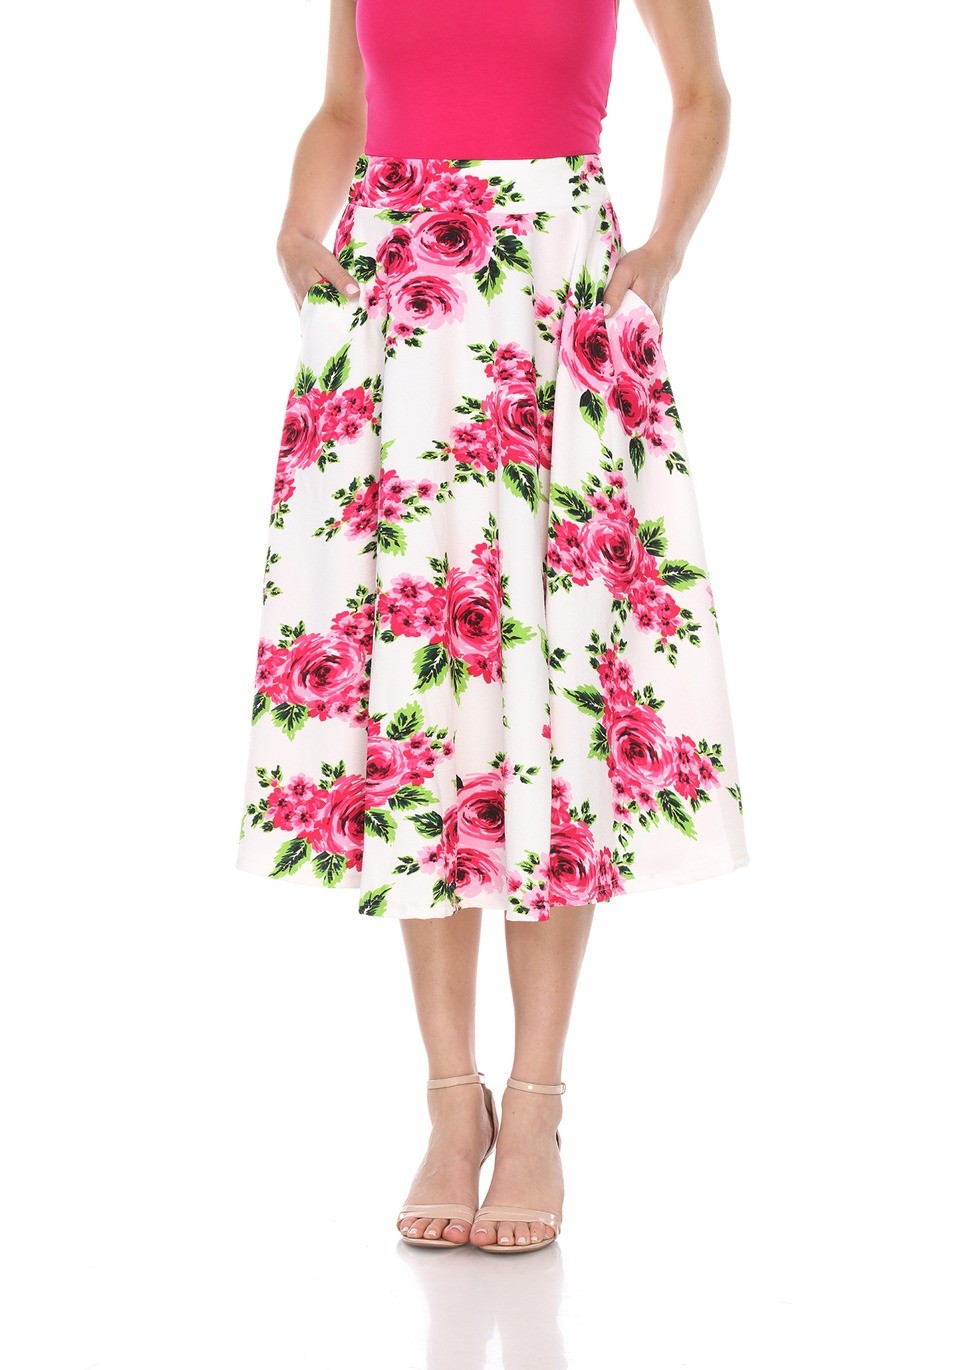 ASLI | Ways to Style Your Floral Skirt - ASLI